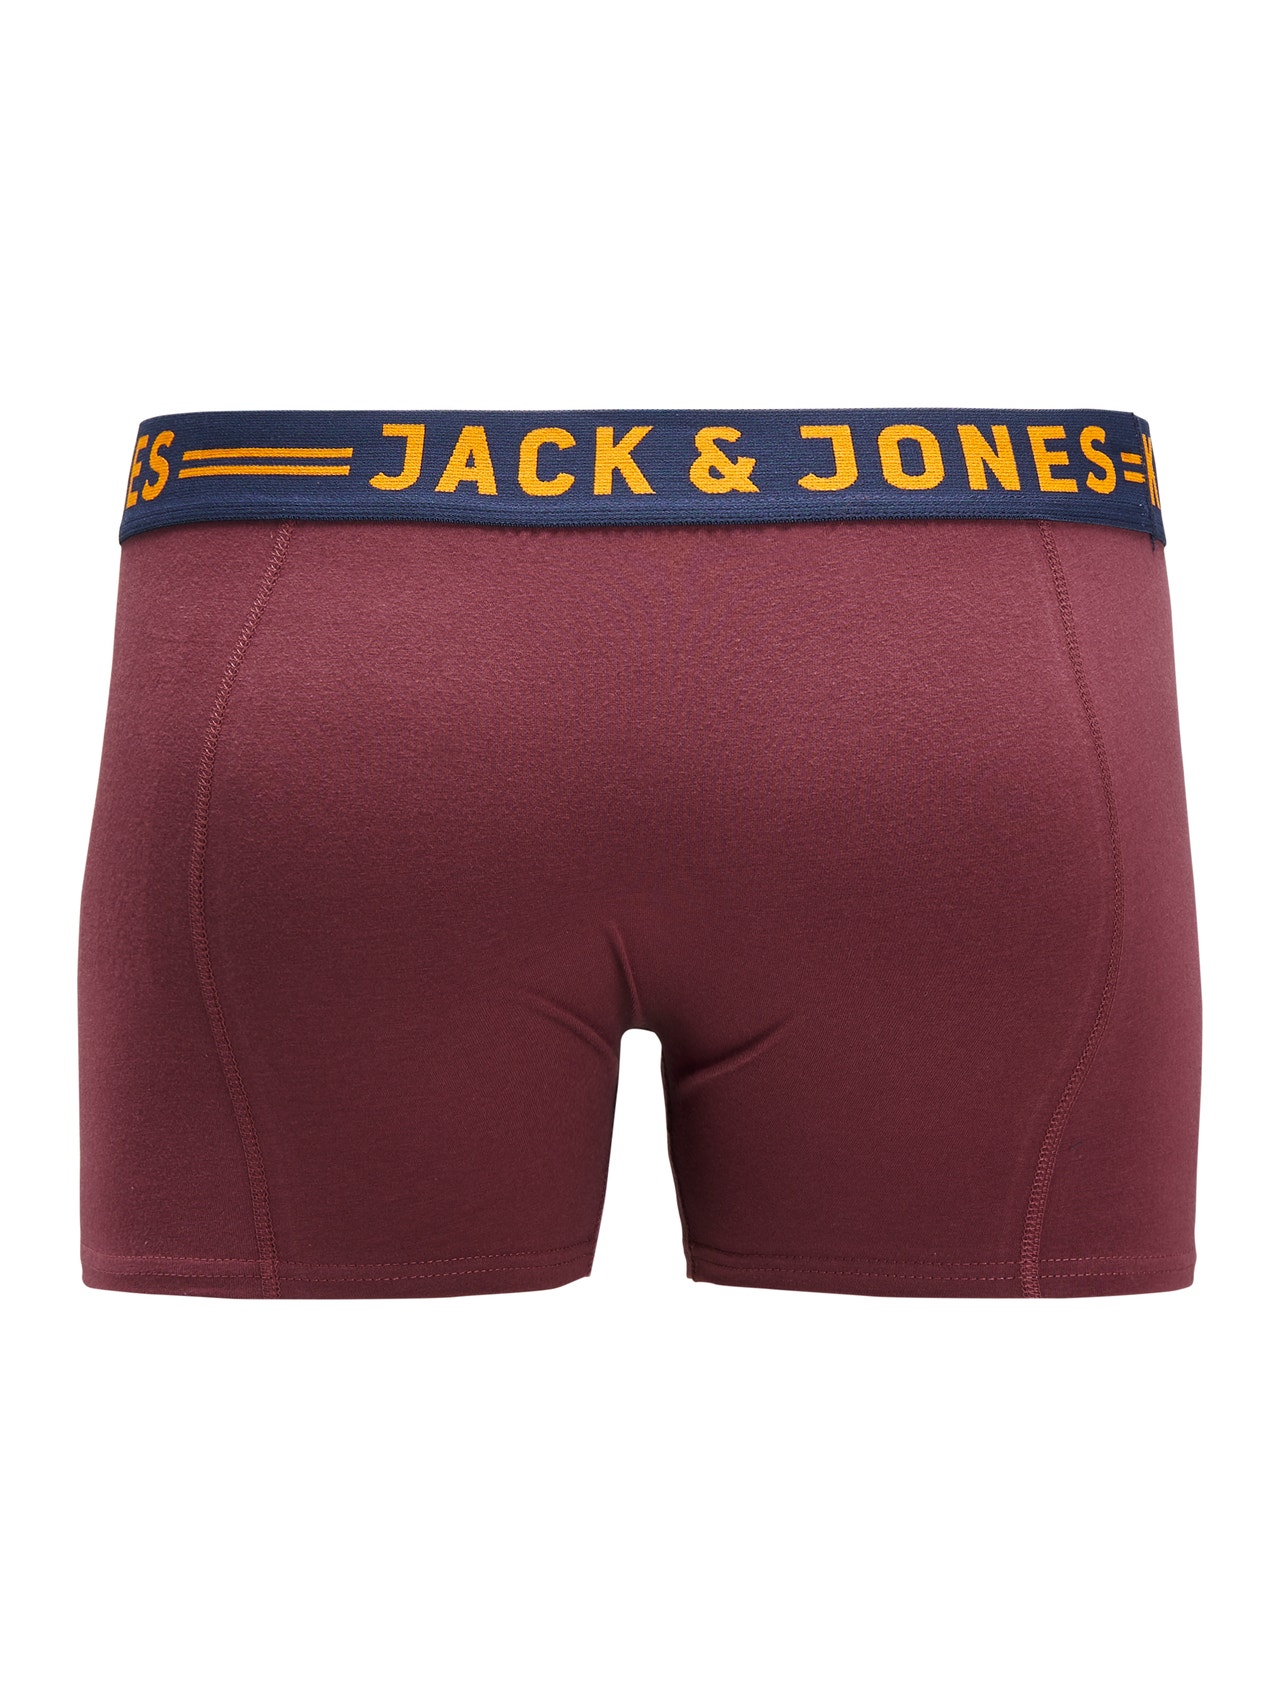 Jack & Jones Plus Size Confezione da 3 Boxer -Burgundy - 12147592